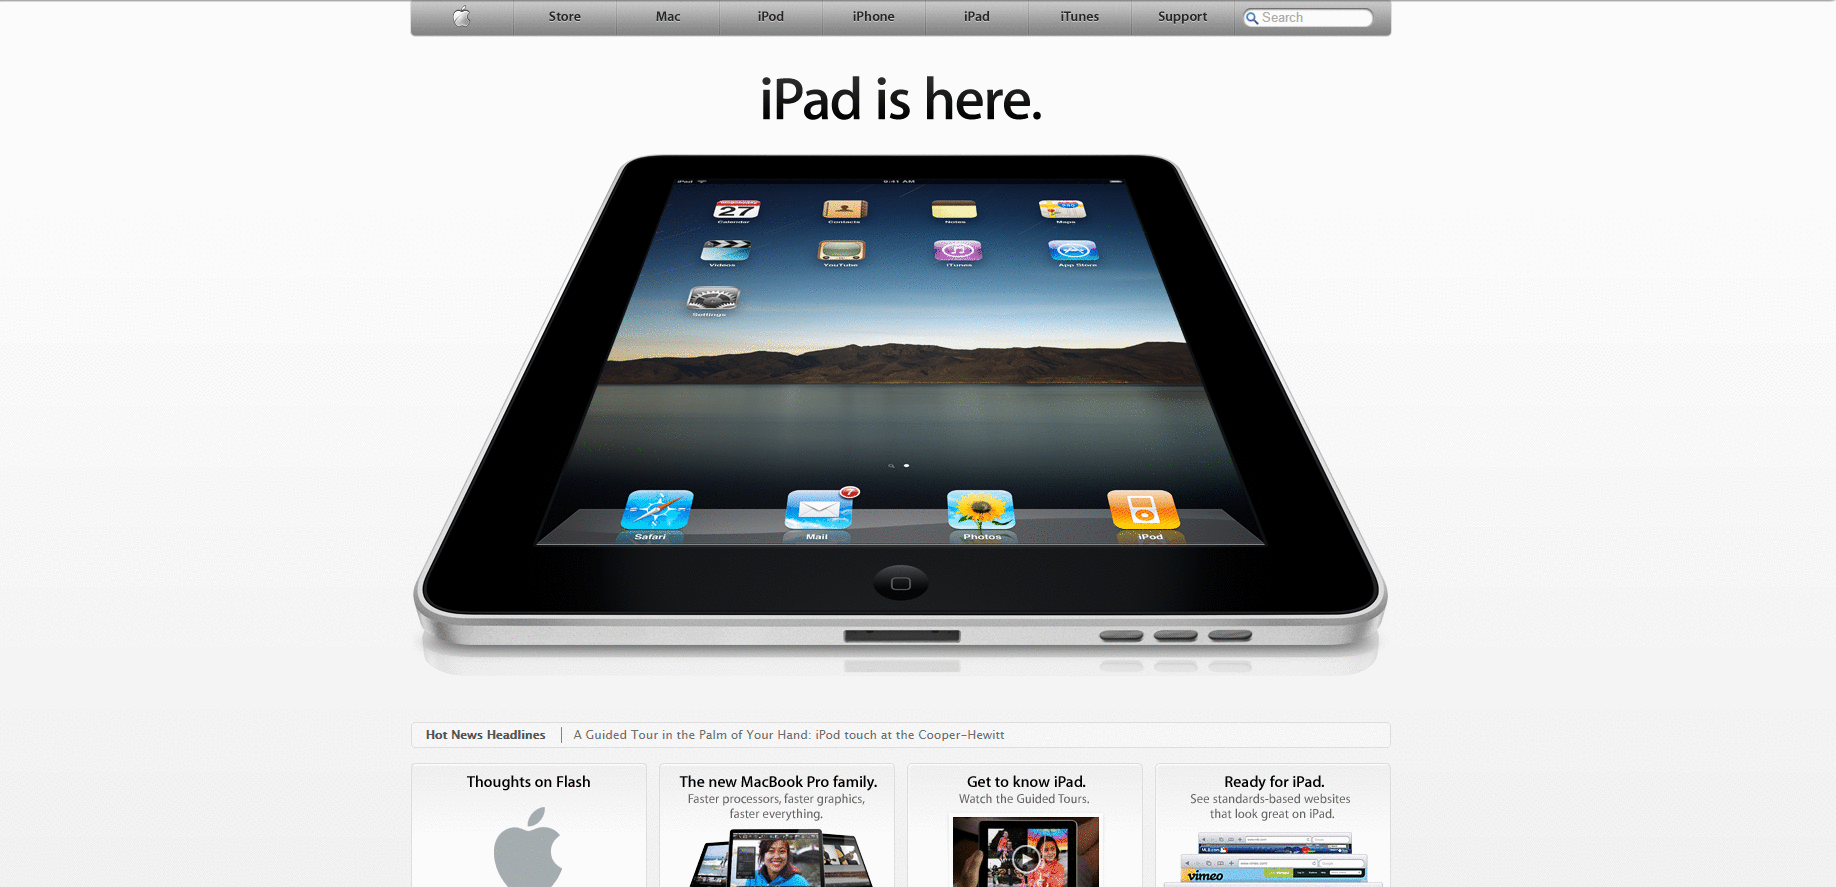 Website Design for apple.com in 2010